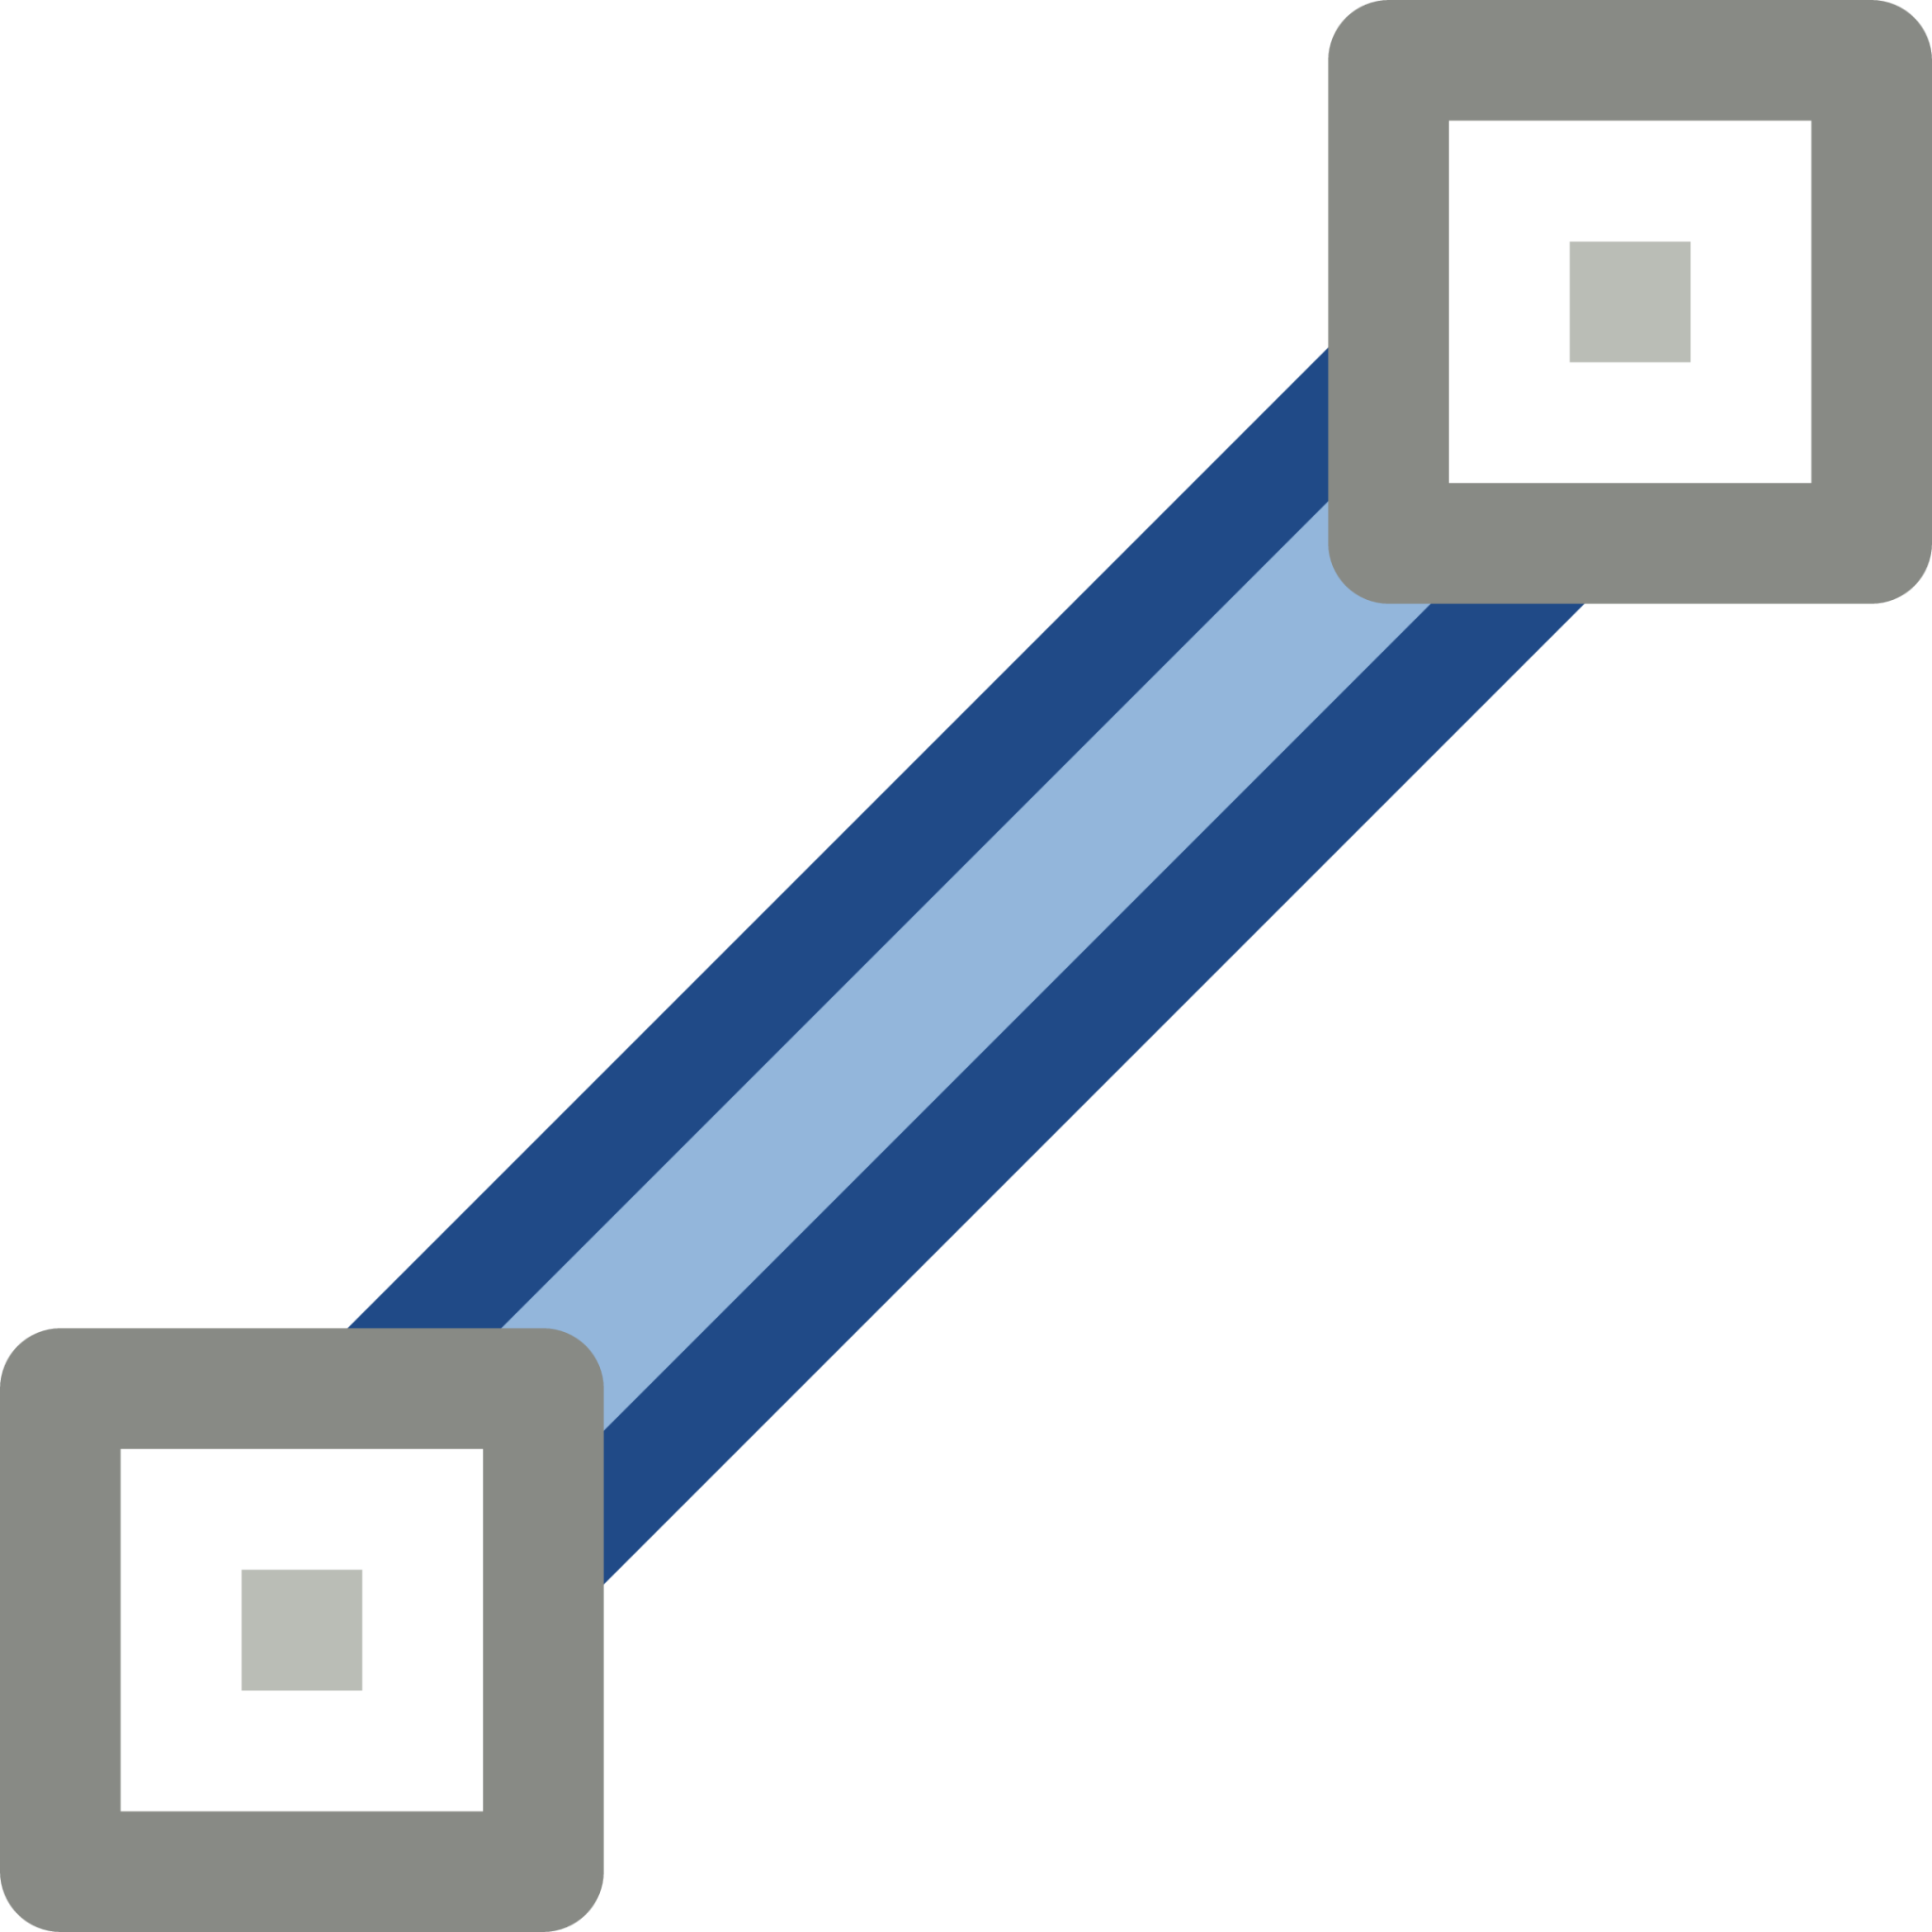 segment line icon